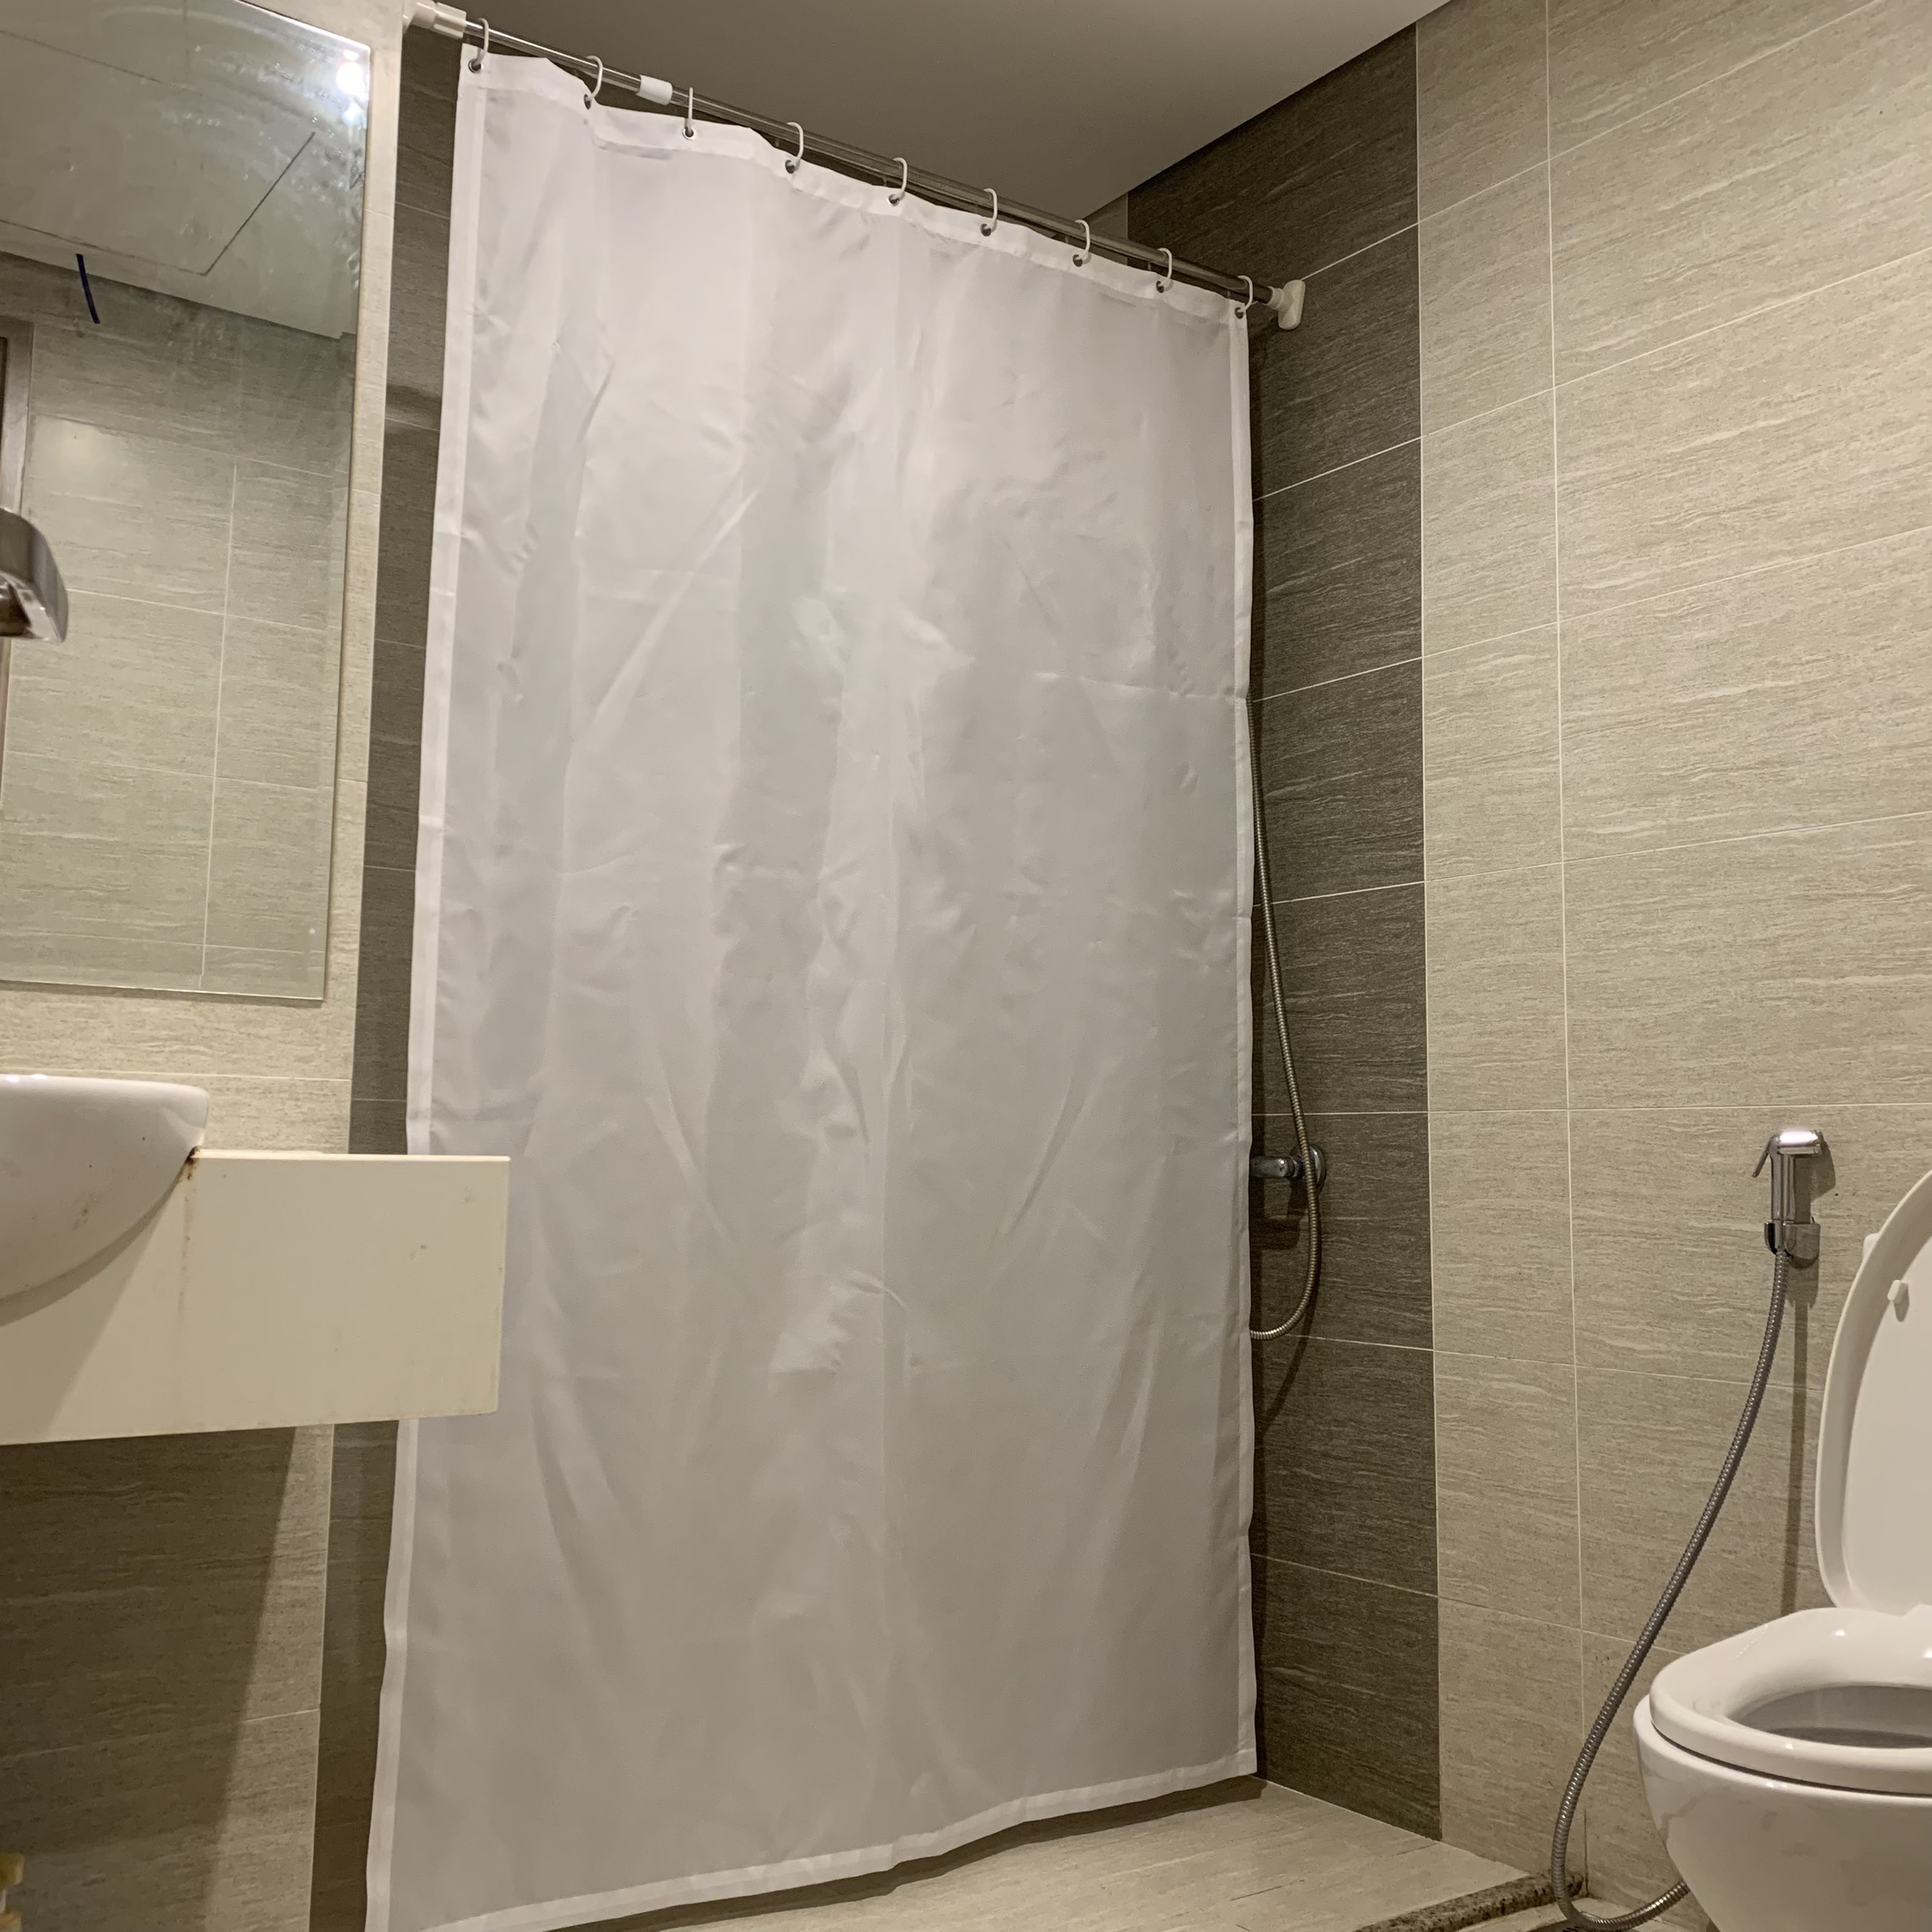 Rèm phòng tắm chống nước: Tinh tế và hiện đại, các bộ rèm phòng tắm chống nước đã trở thành một xu hướng trong thiết kế nội thất. Với nhiều mẫu mã đa dạng để lựa chọn, chúng đem lại sự sang trọng và tiện ích cho không gian tắm của bạn.